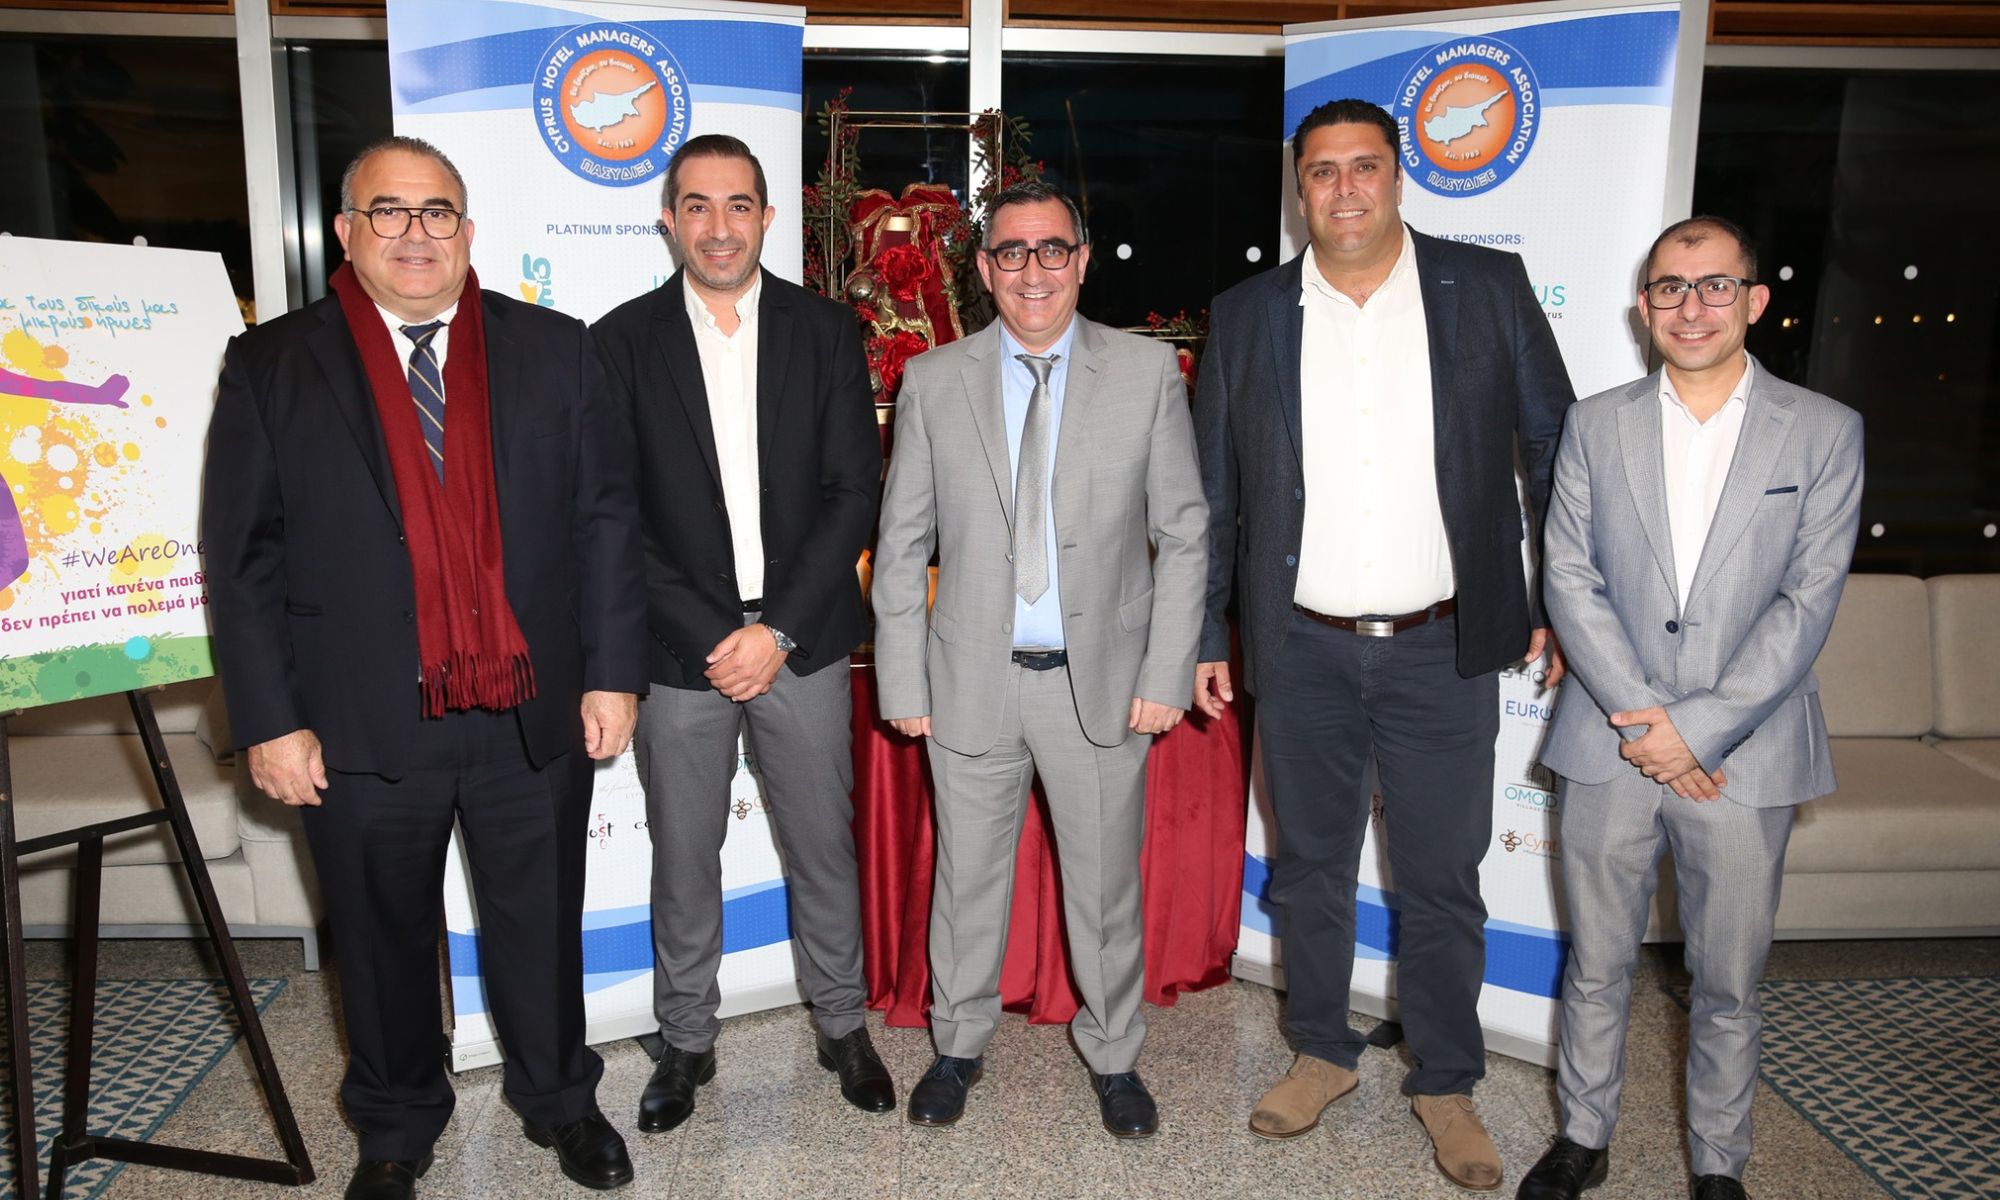 Οι Μύλοι Χατζηγιώρκη στο Φιλανθρωπικό Gala Dinner του Cyprus Hotel Managers Association (ΕΙΚΟΝΕΣ)